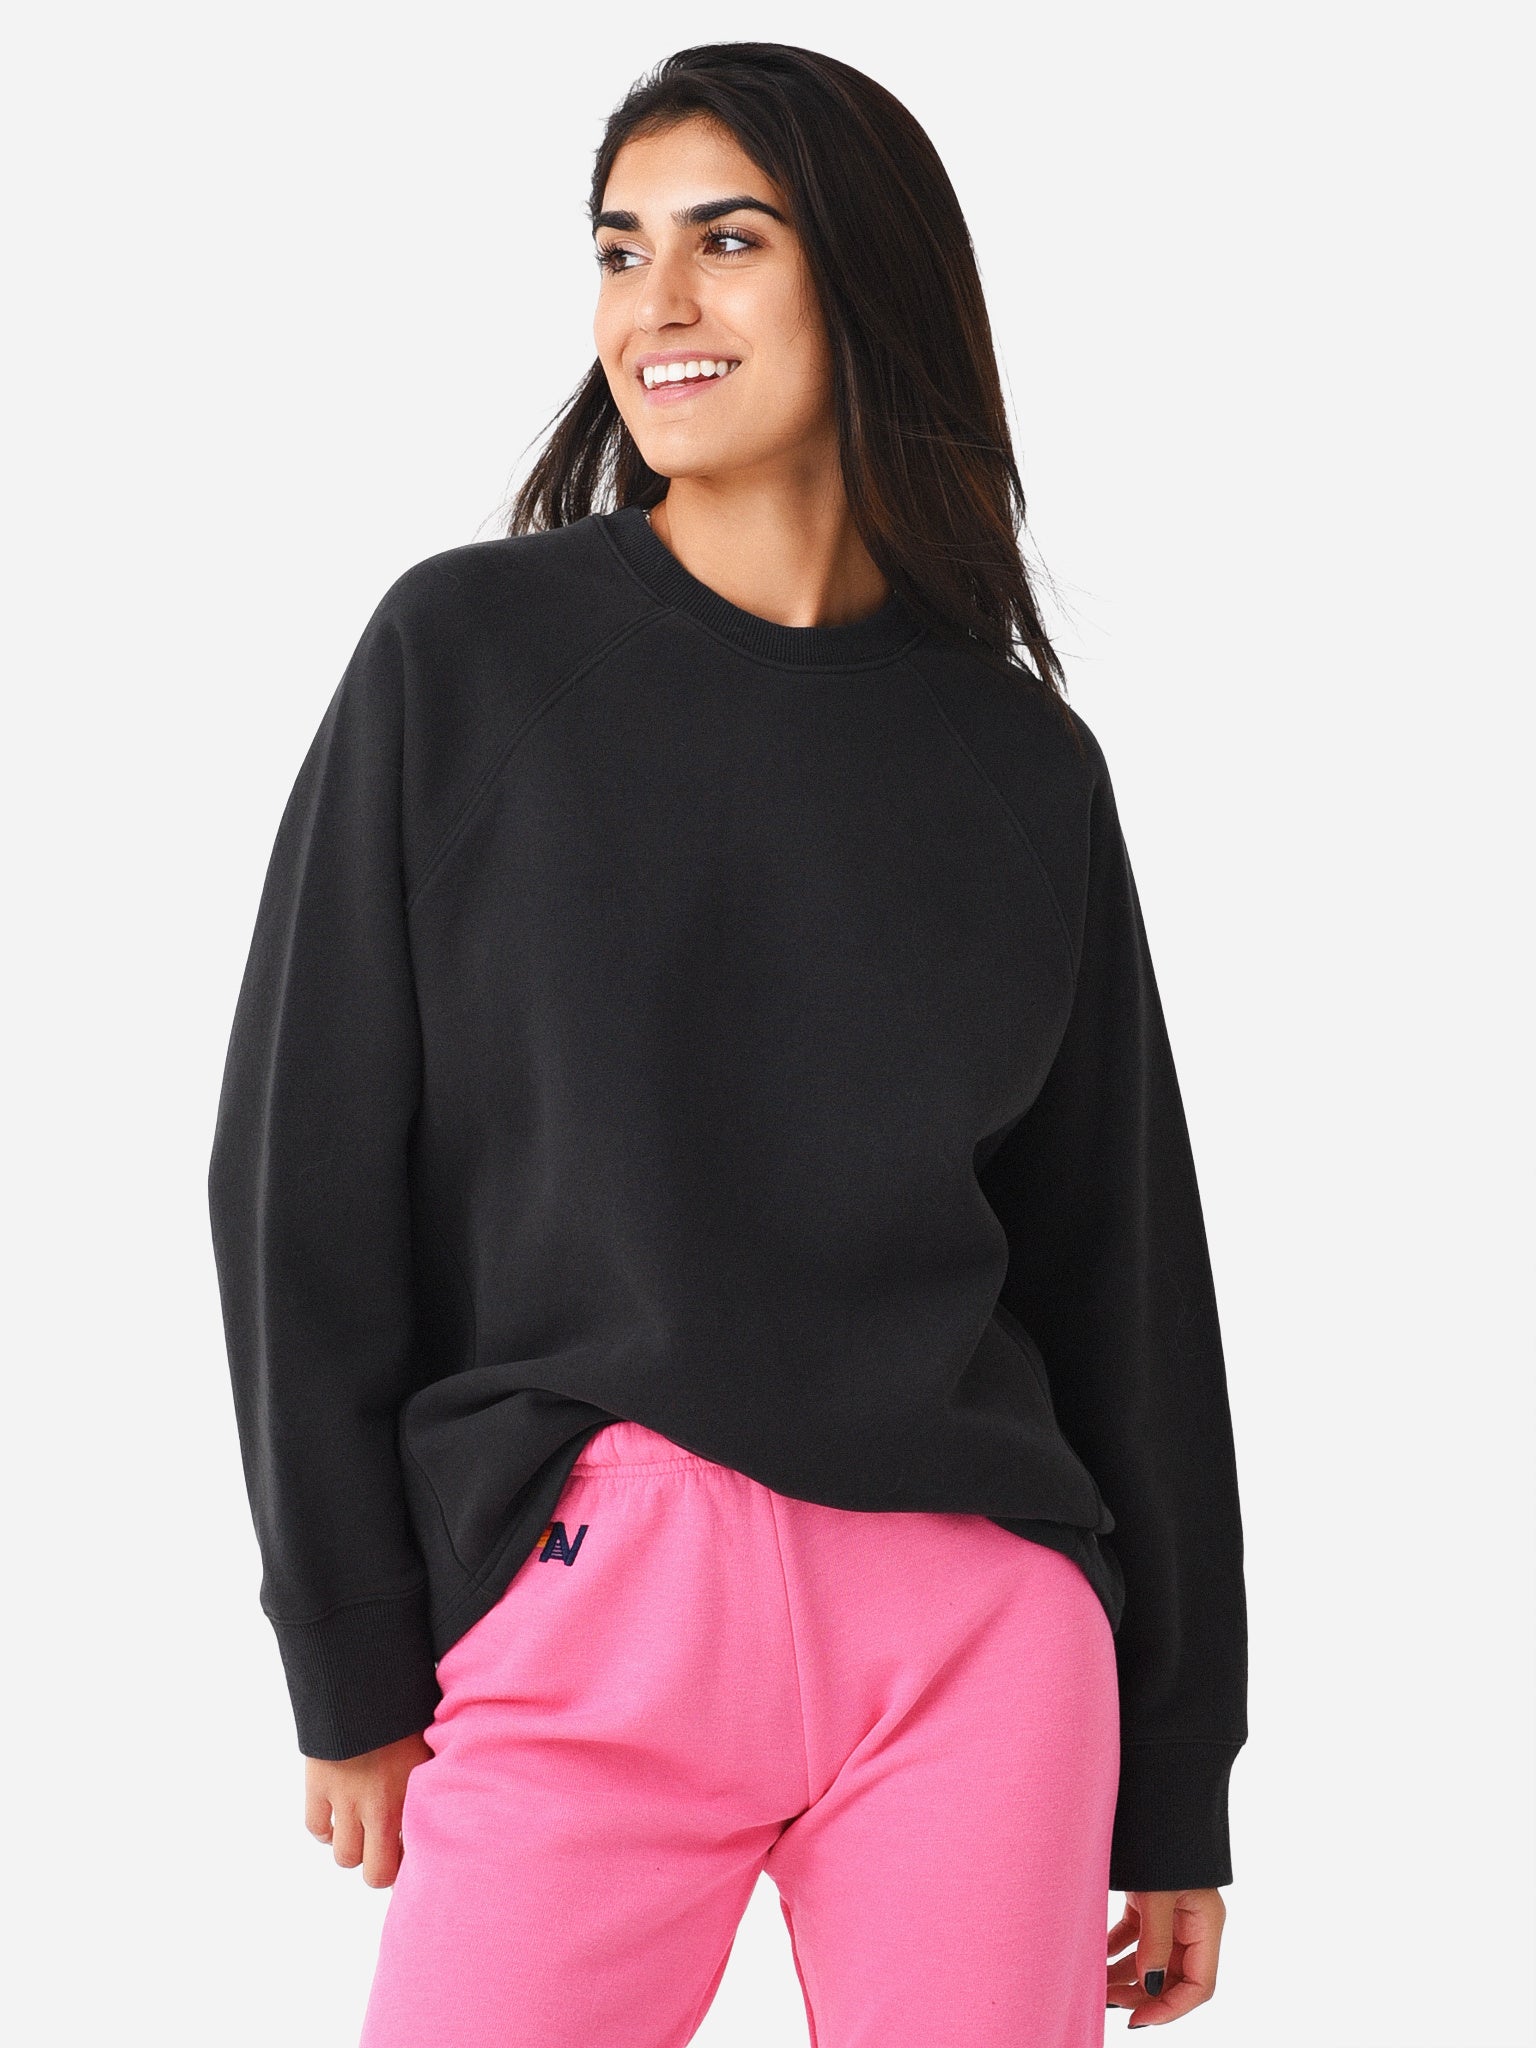 Vuori Cleo Sweatshirt - Women's